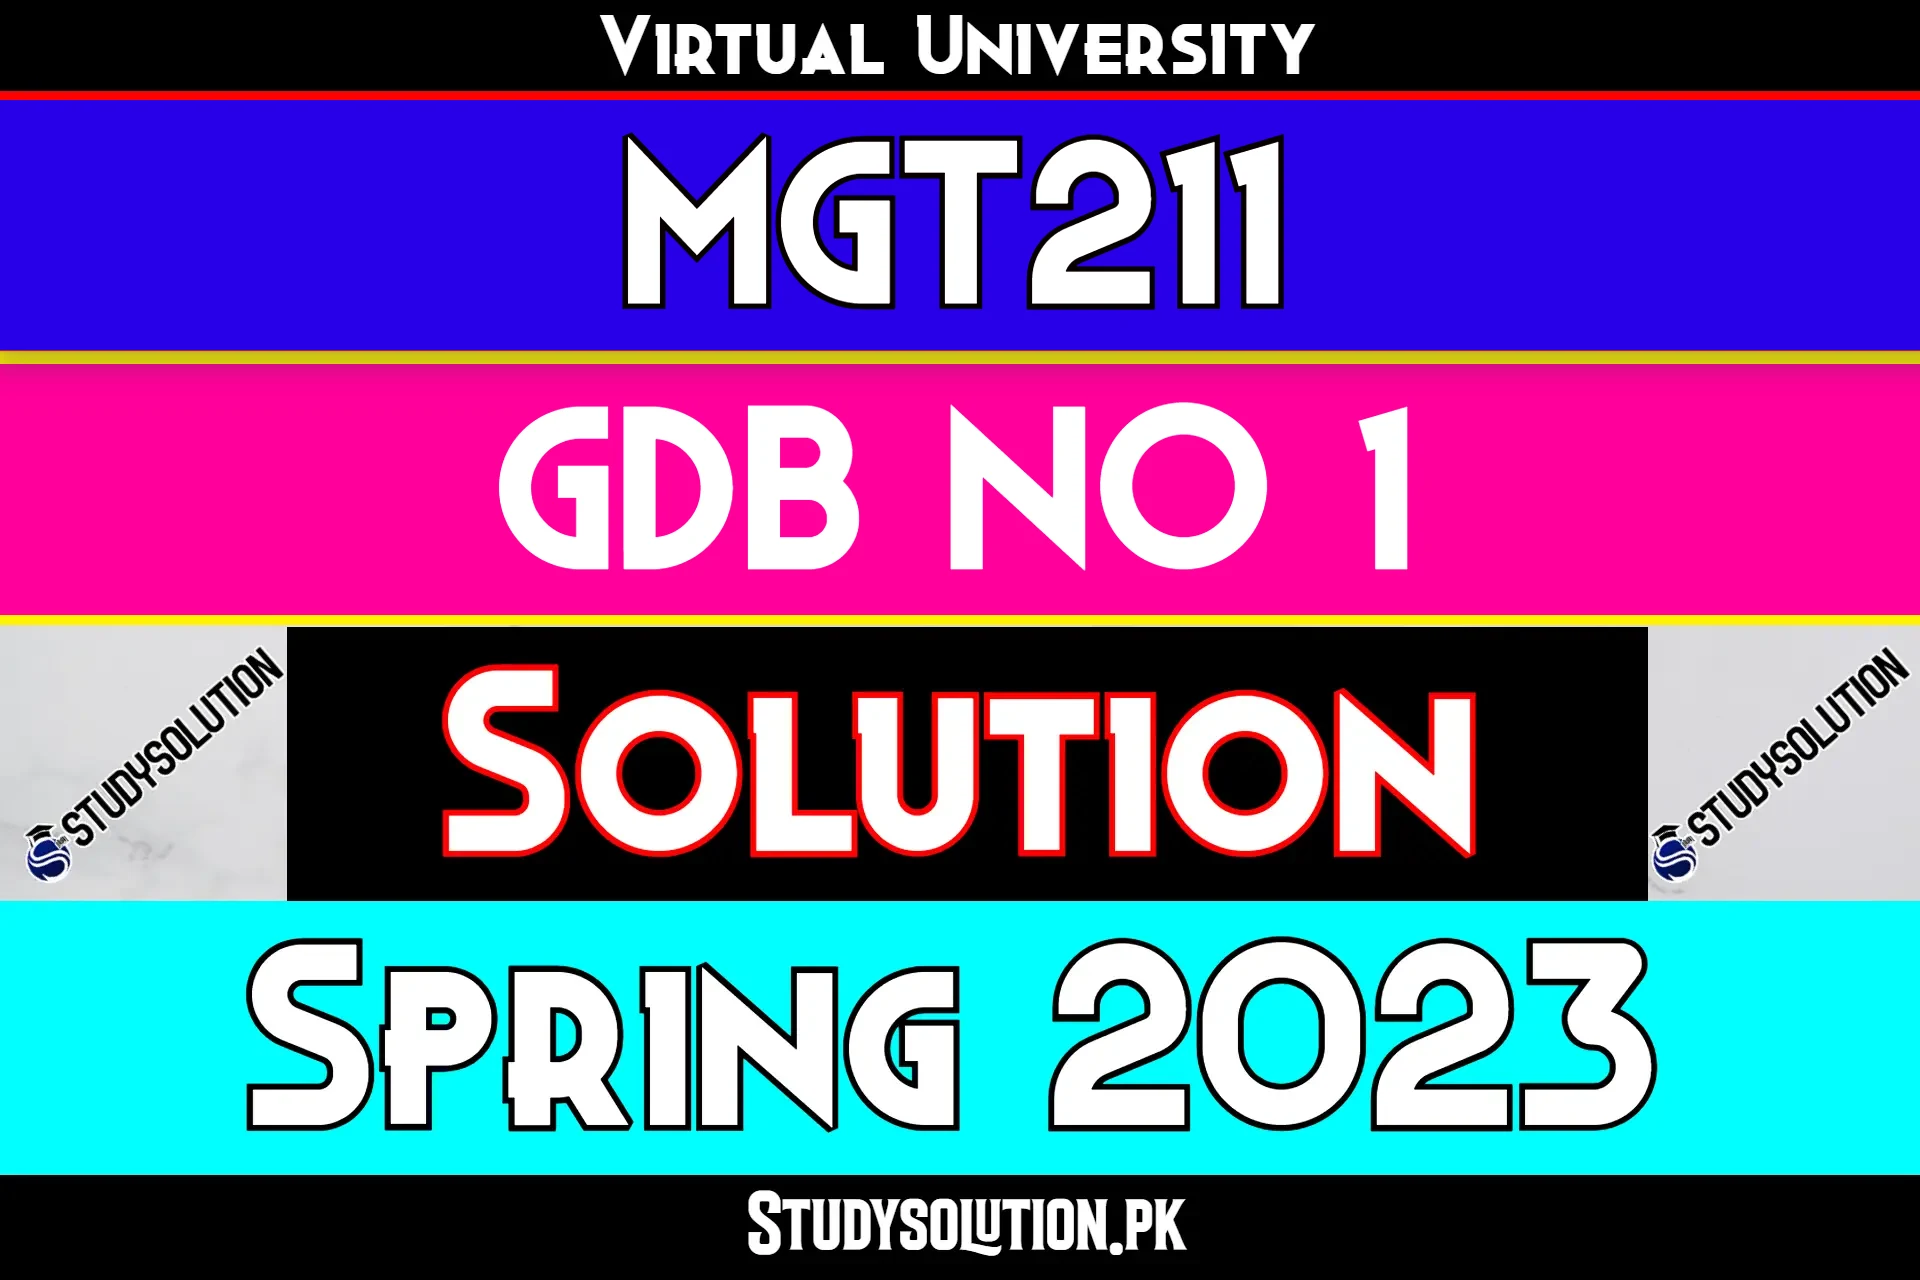 MGT211 GDB No 1 Solution Spring 2023